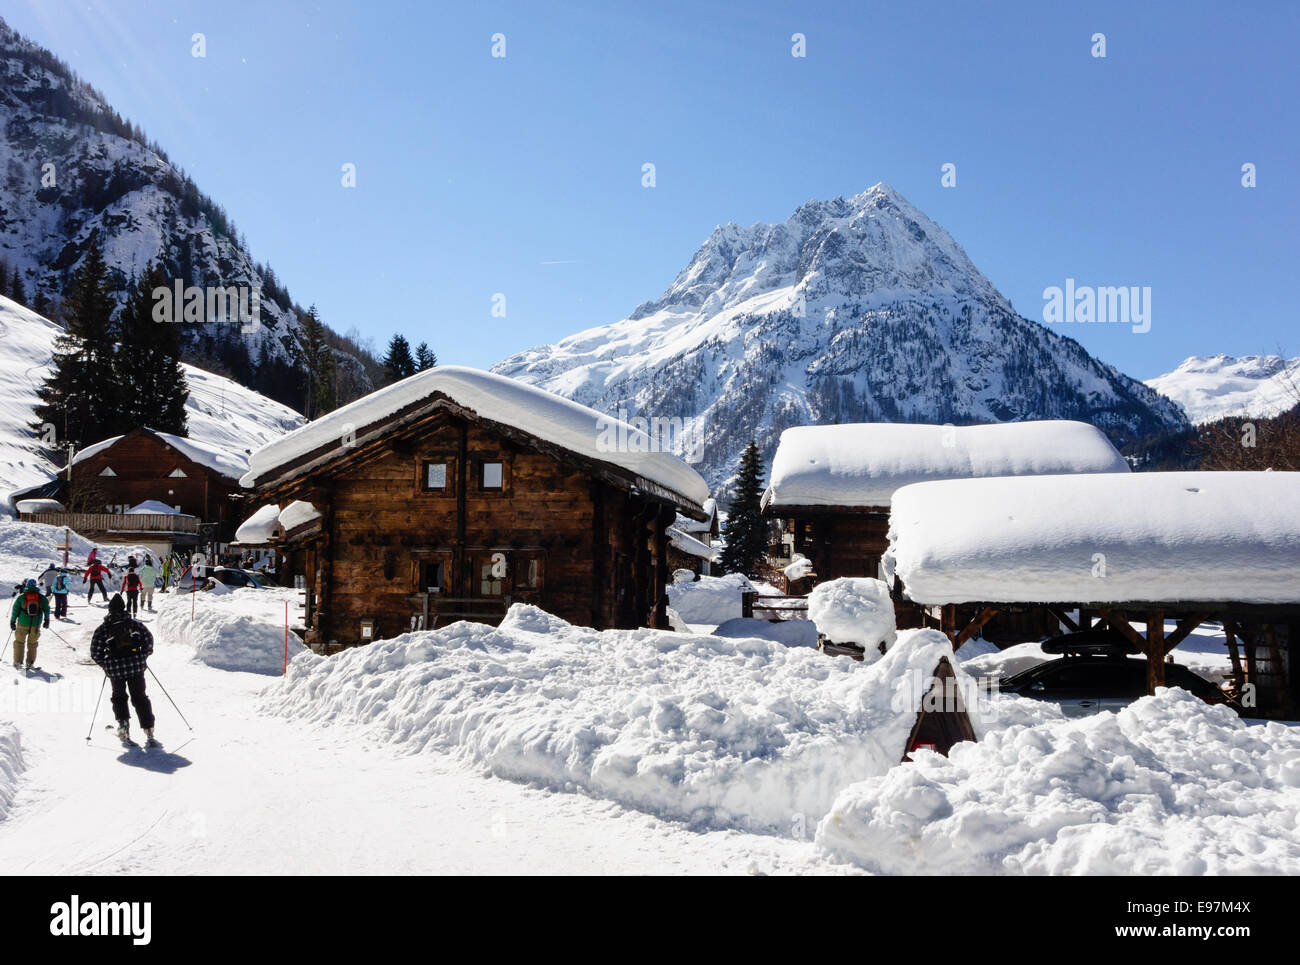 Skieurs sur pente de neige approchant petit village alpin resort de Vallorcine dans la vallée de Chamonix, Haute Savoie, Rhône-Alpes, France Banque D'Images